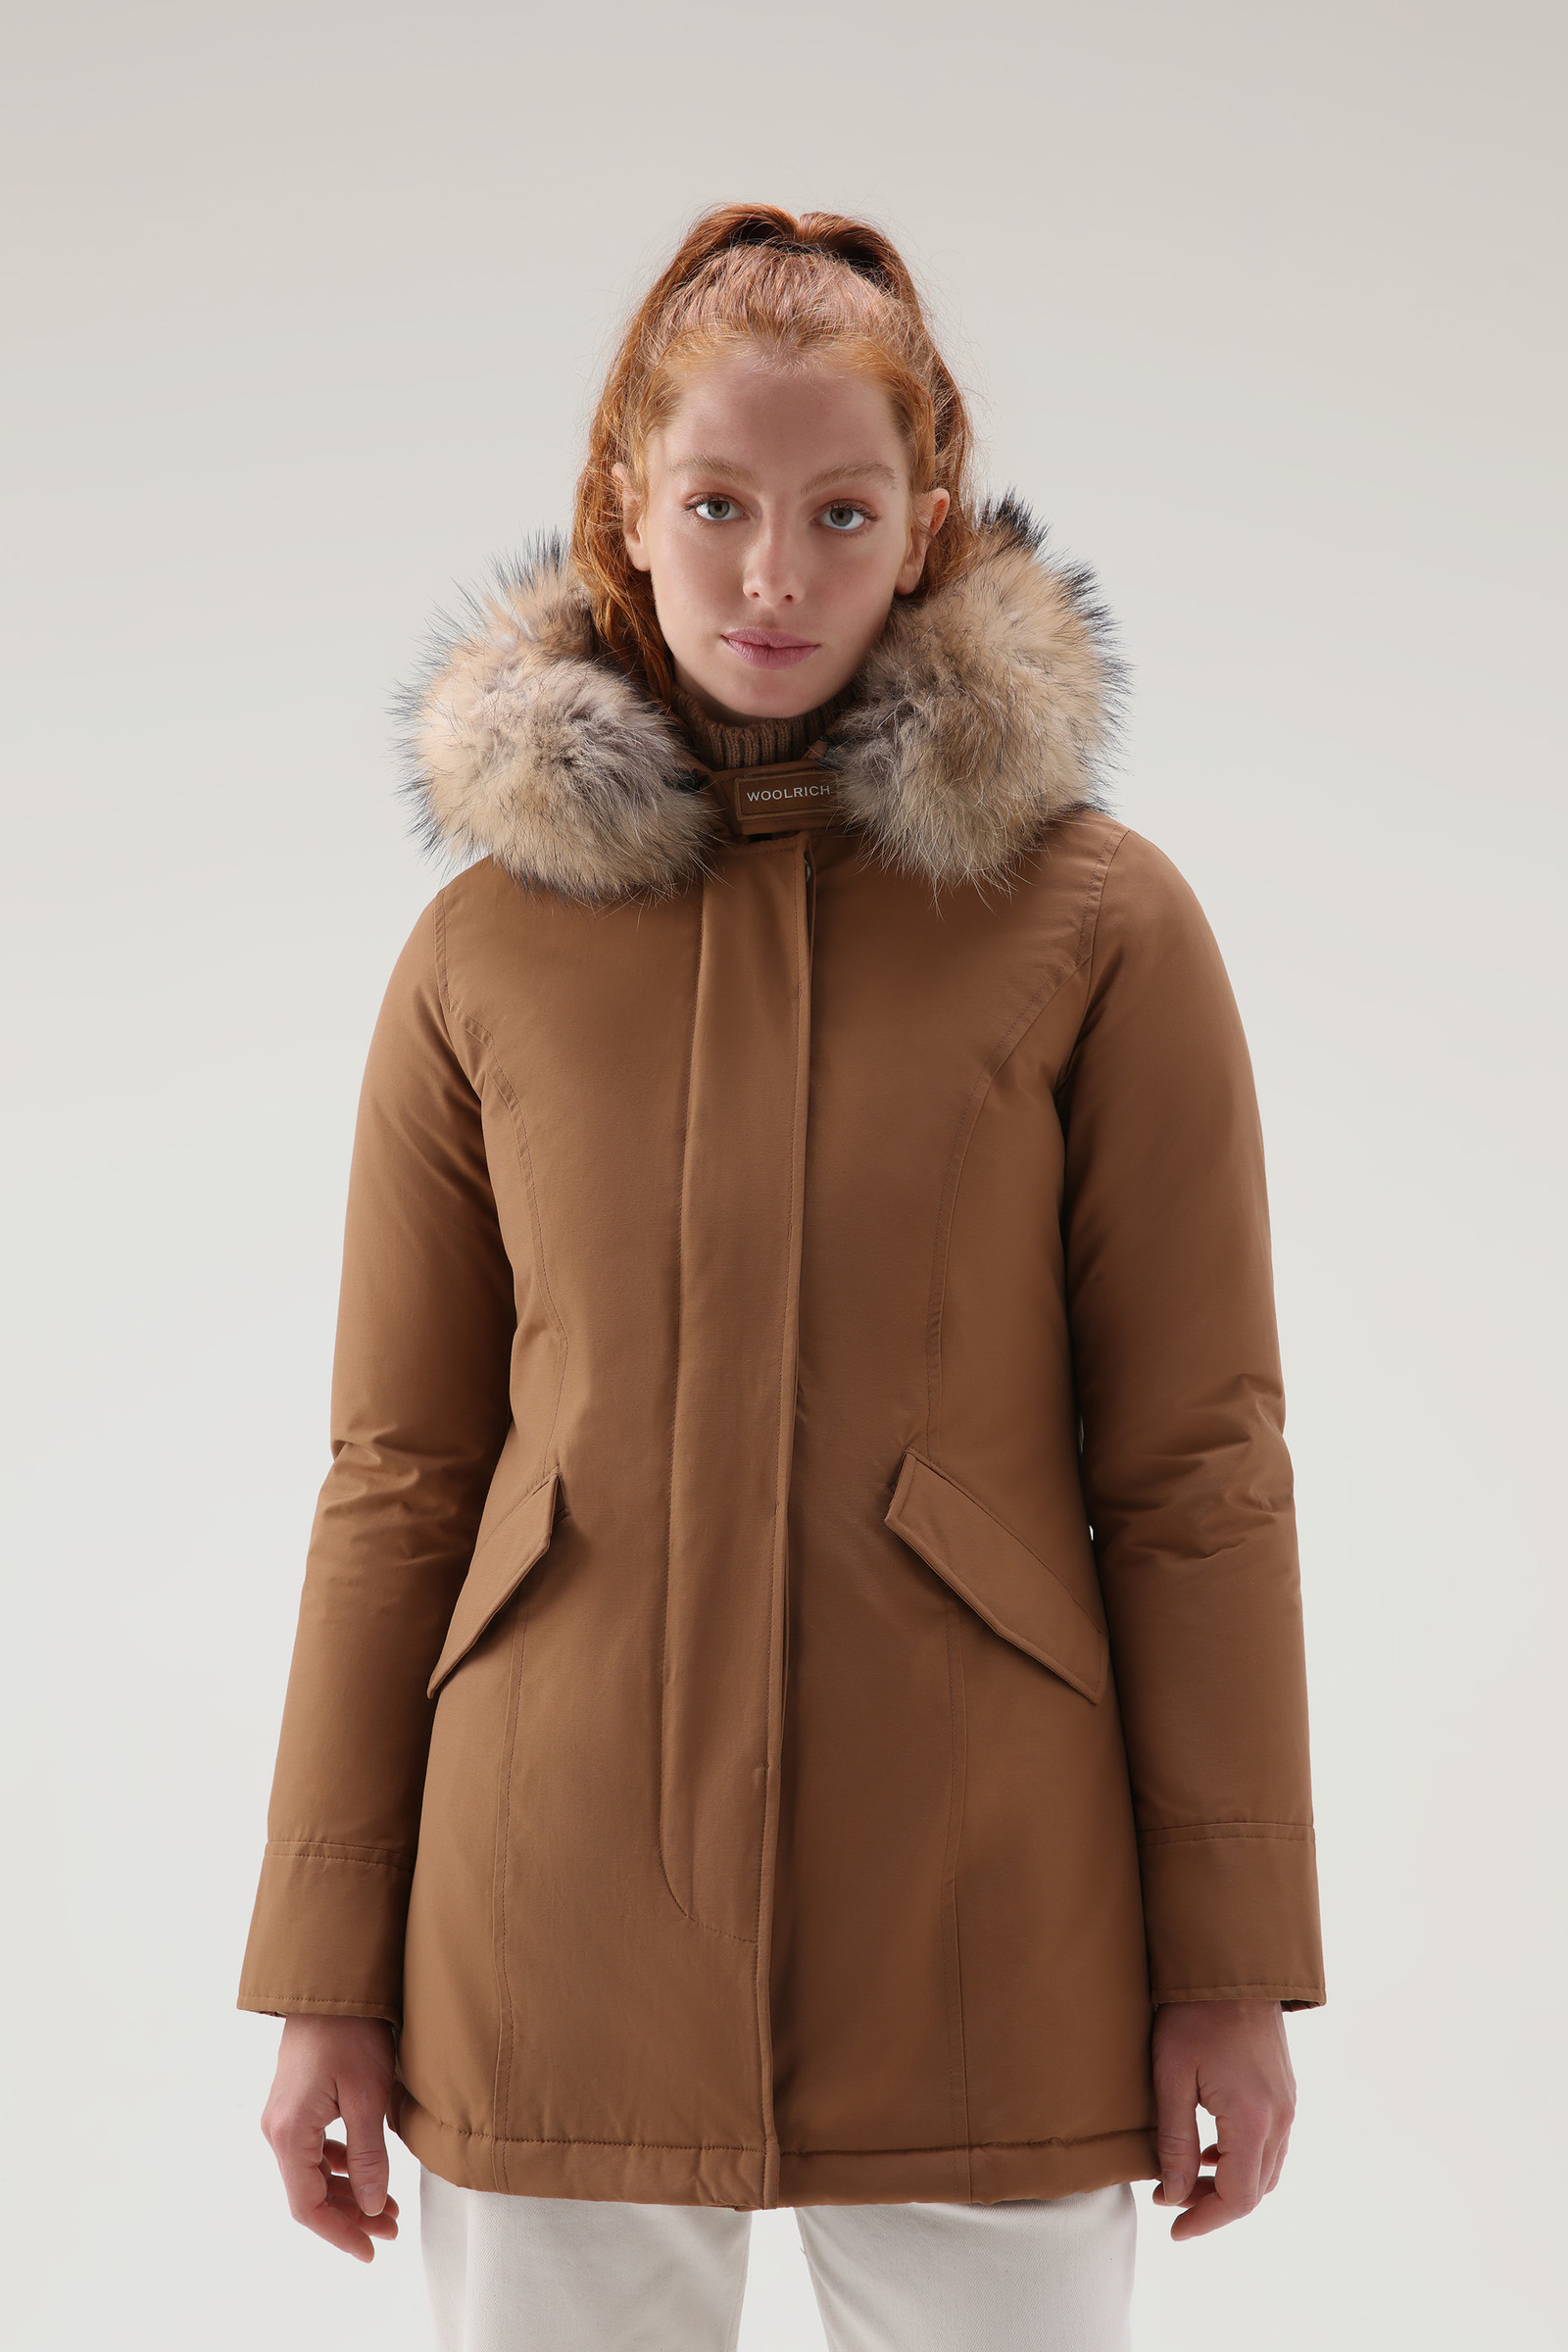 Bijzettafeltje verslag doen van combineren Women's Arctic Parka in Ramar Cloth with Detachable Fur Trim Brown |  Woolrich USA